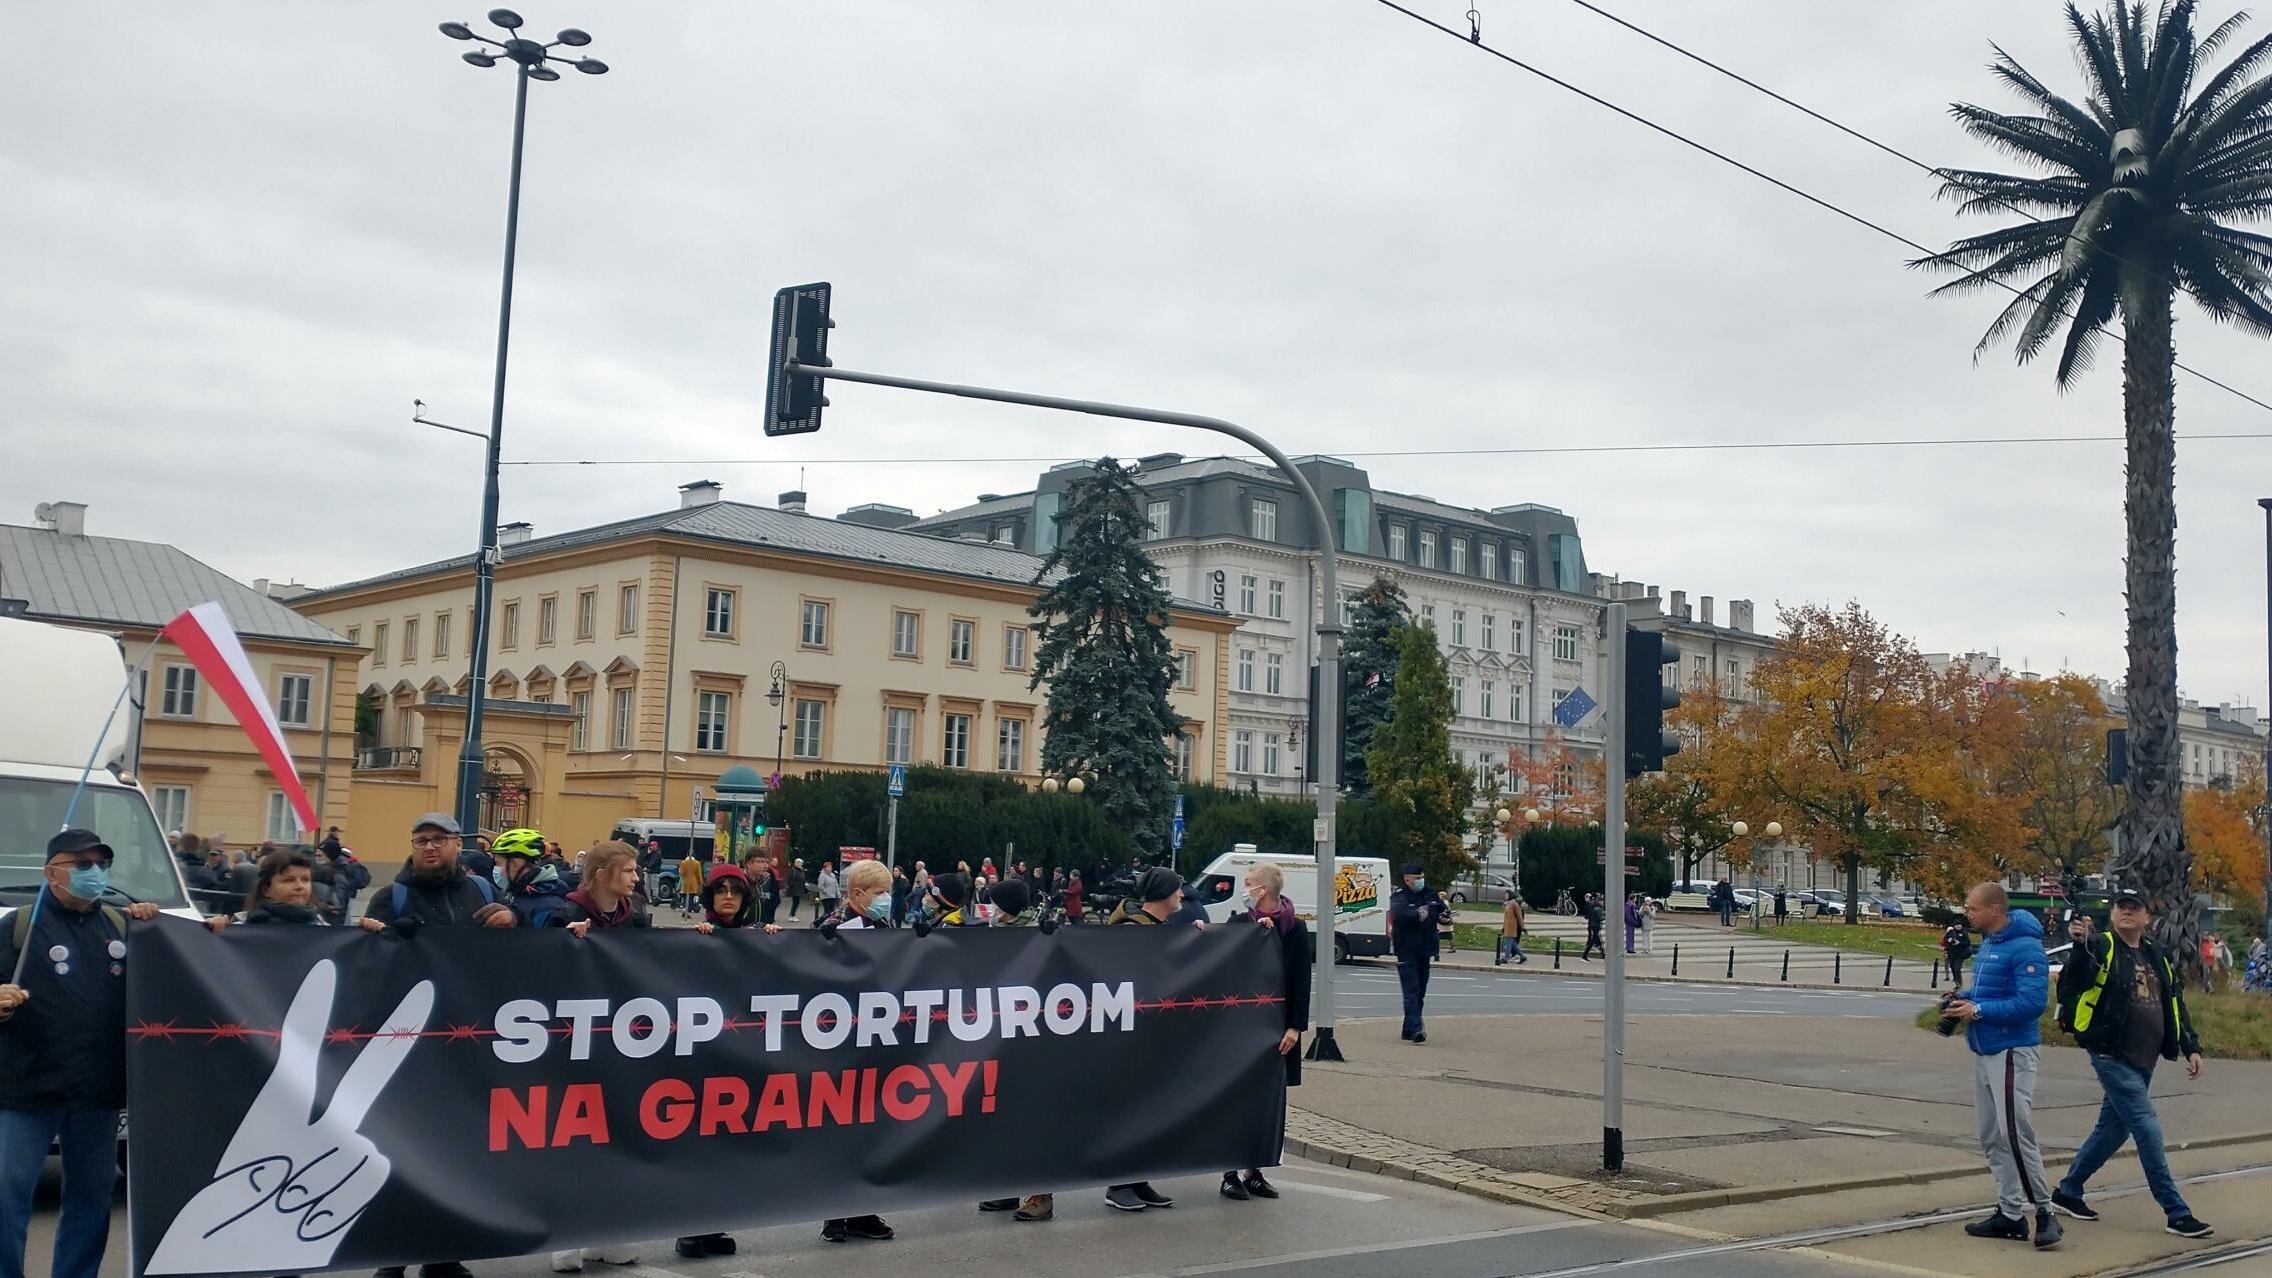 Warszawa. Protest przeciwko działaniom władz na granicy białoruskiej: manifestanci na rondzie De Gaulla z banerem „Stop torturom na granicy"